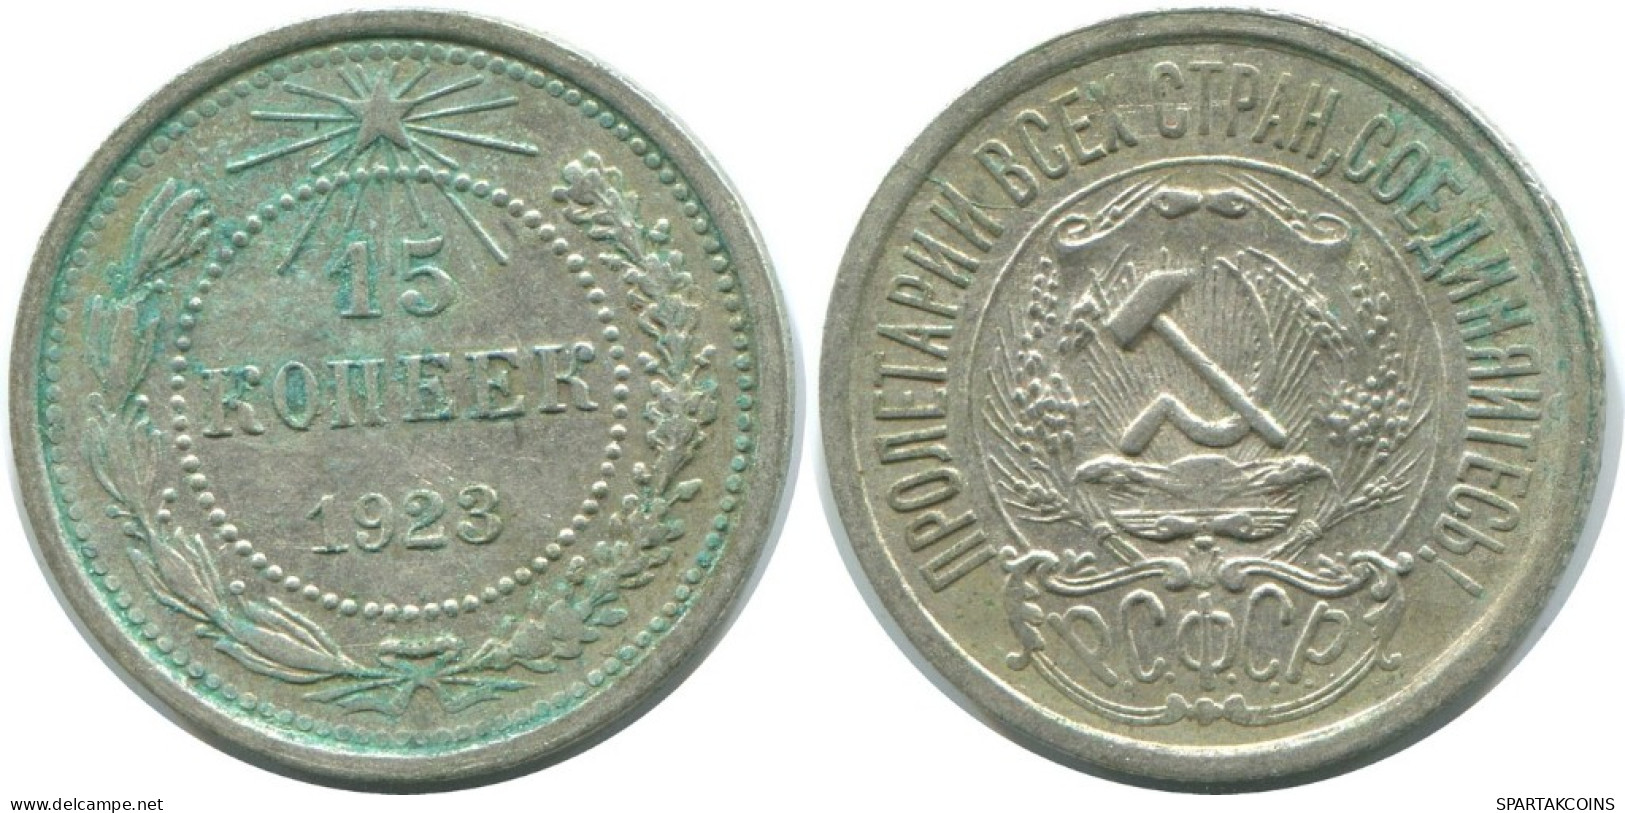 15 KOPEKS 1923 RUSSIA RSFSR SILVER Coin HIGH GRADE #AF111.4.U.A - Russland